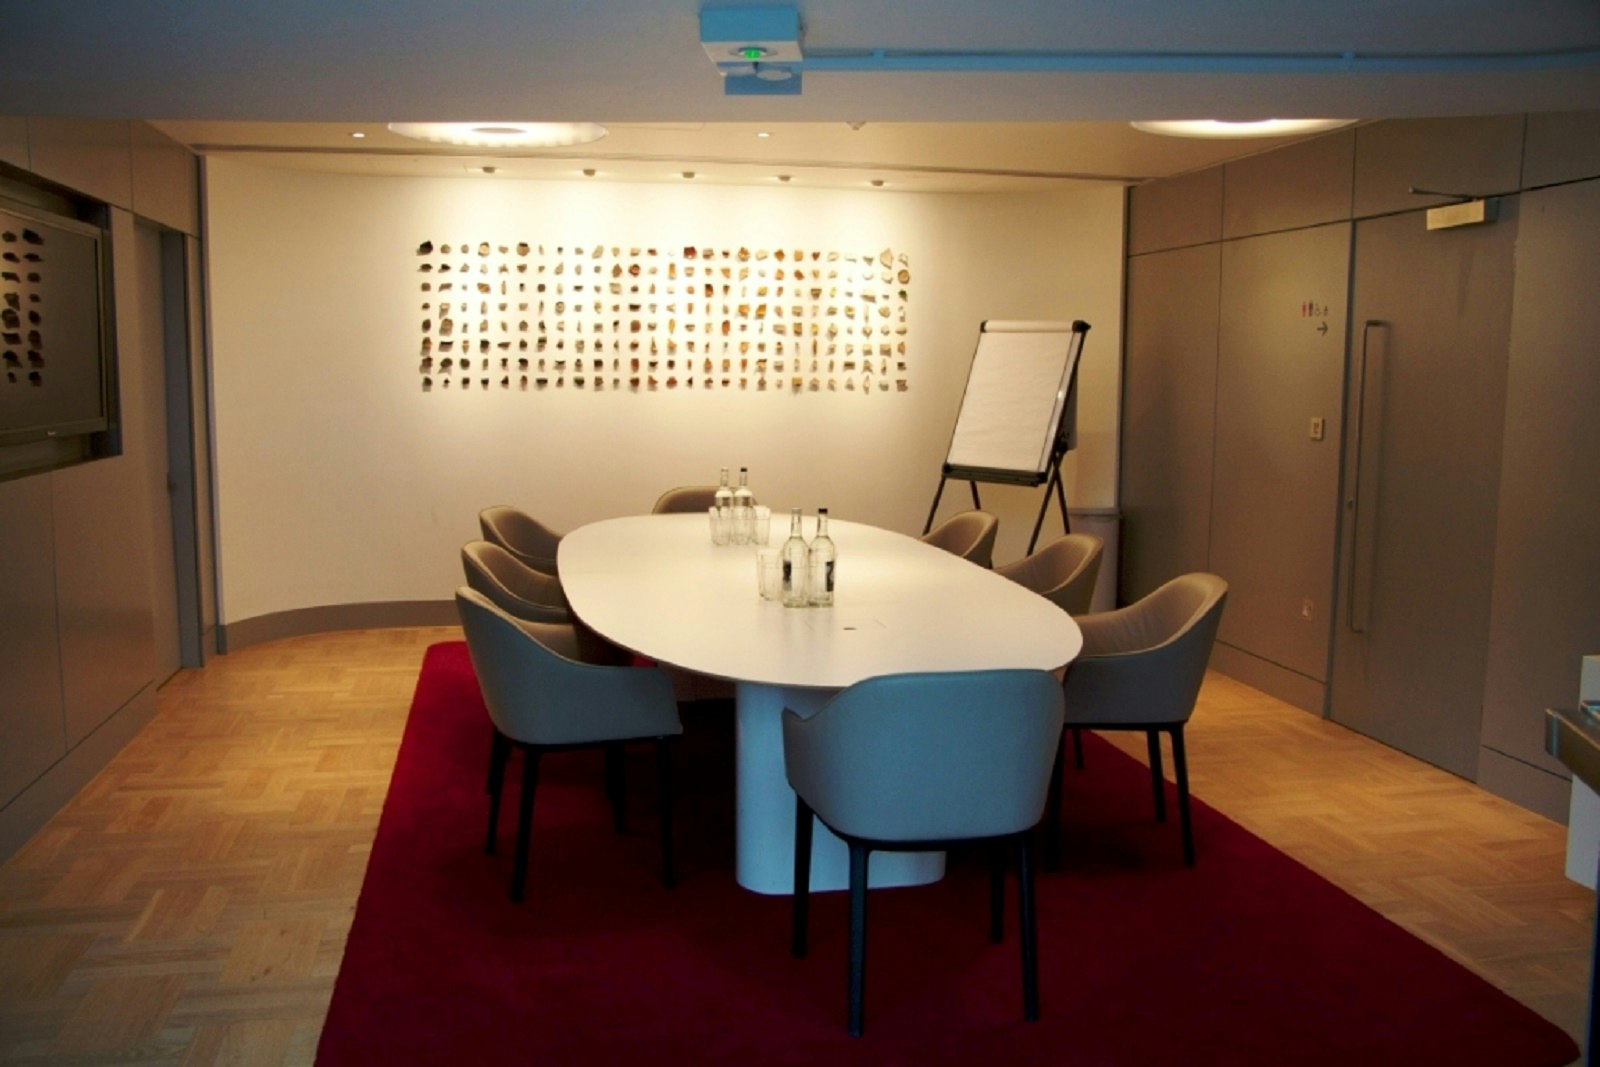 Meeting Rooms Venues in West London - Museum of London